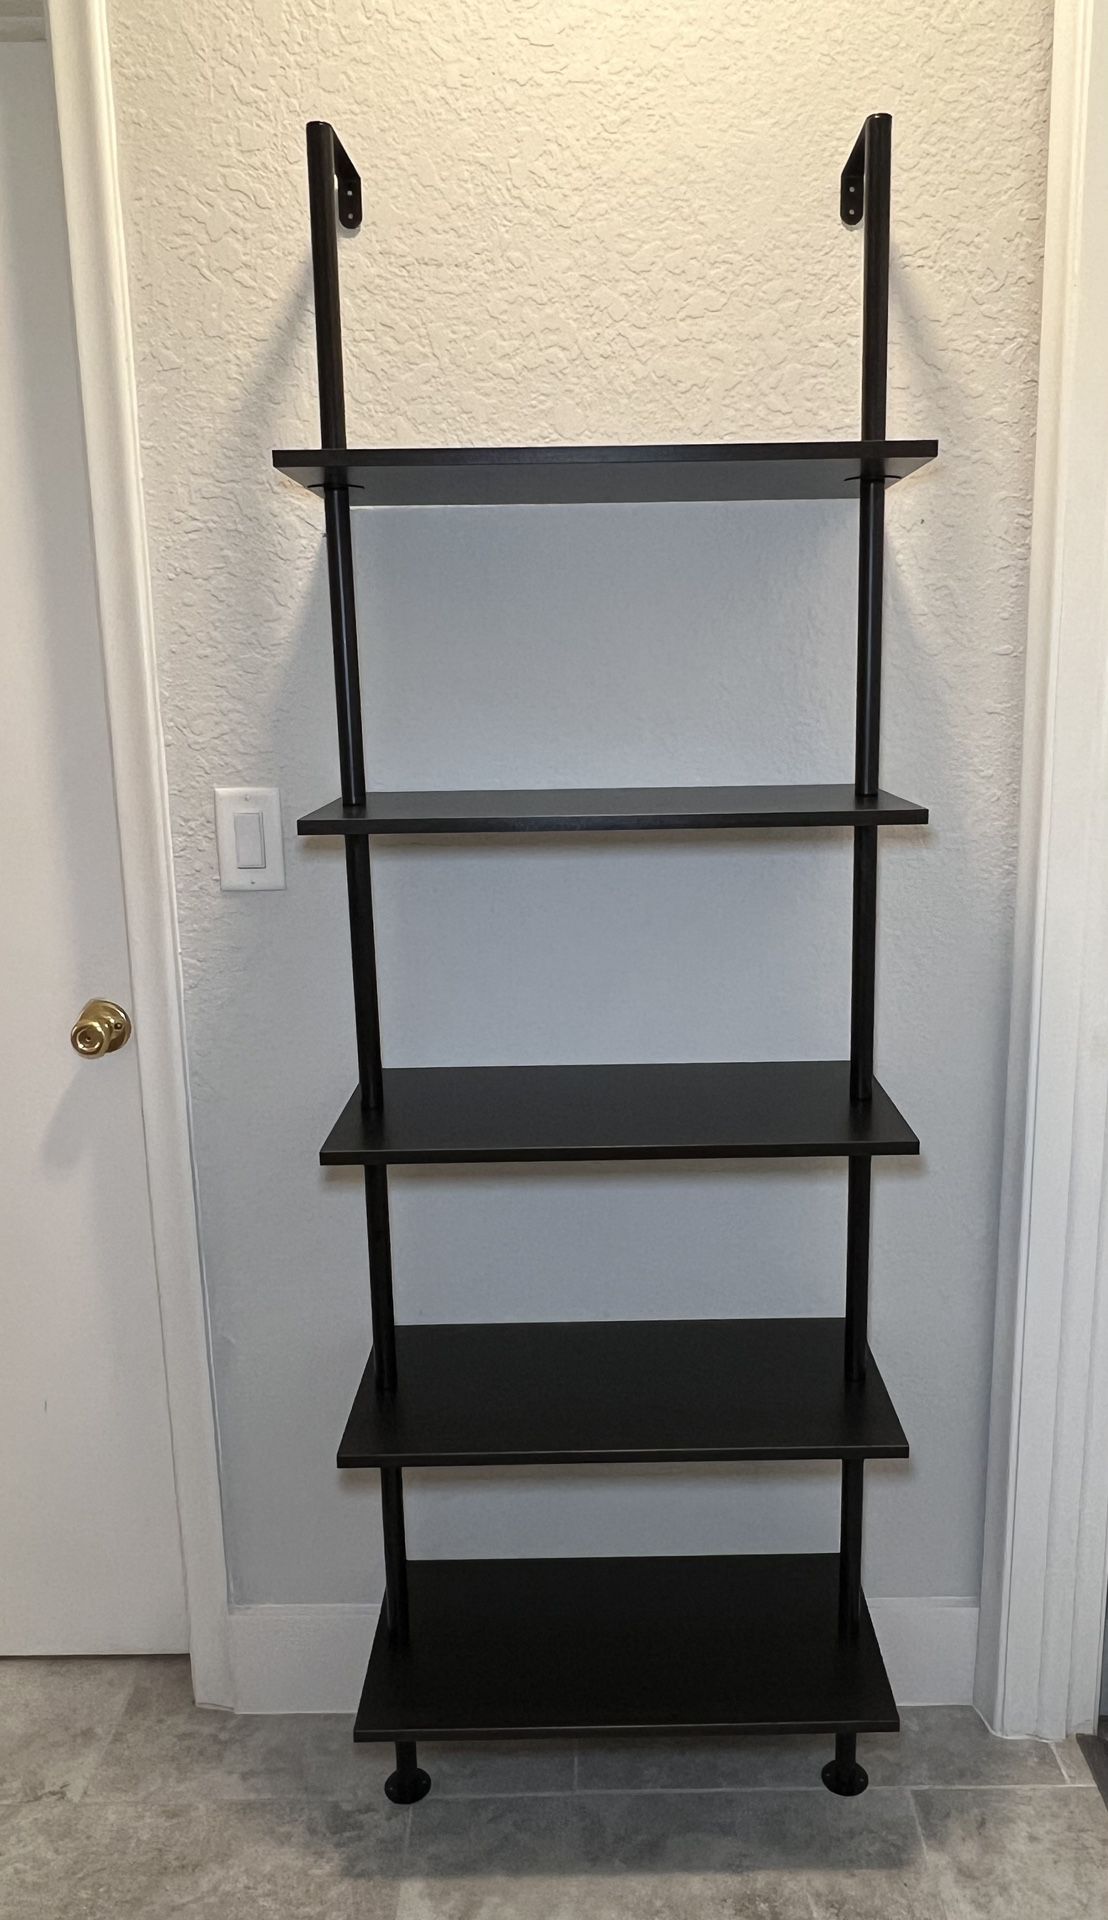 NEW - Ladder Bookshelf / Shelf Unit / Storage Shelves - 5-Tier - Black metal frame with espresso shelves 